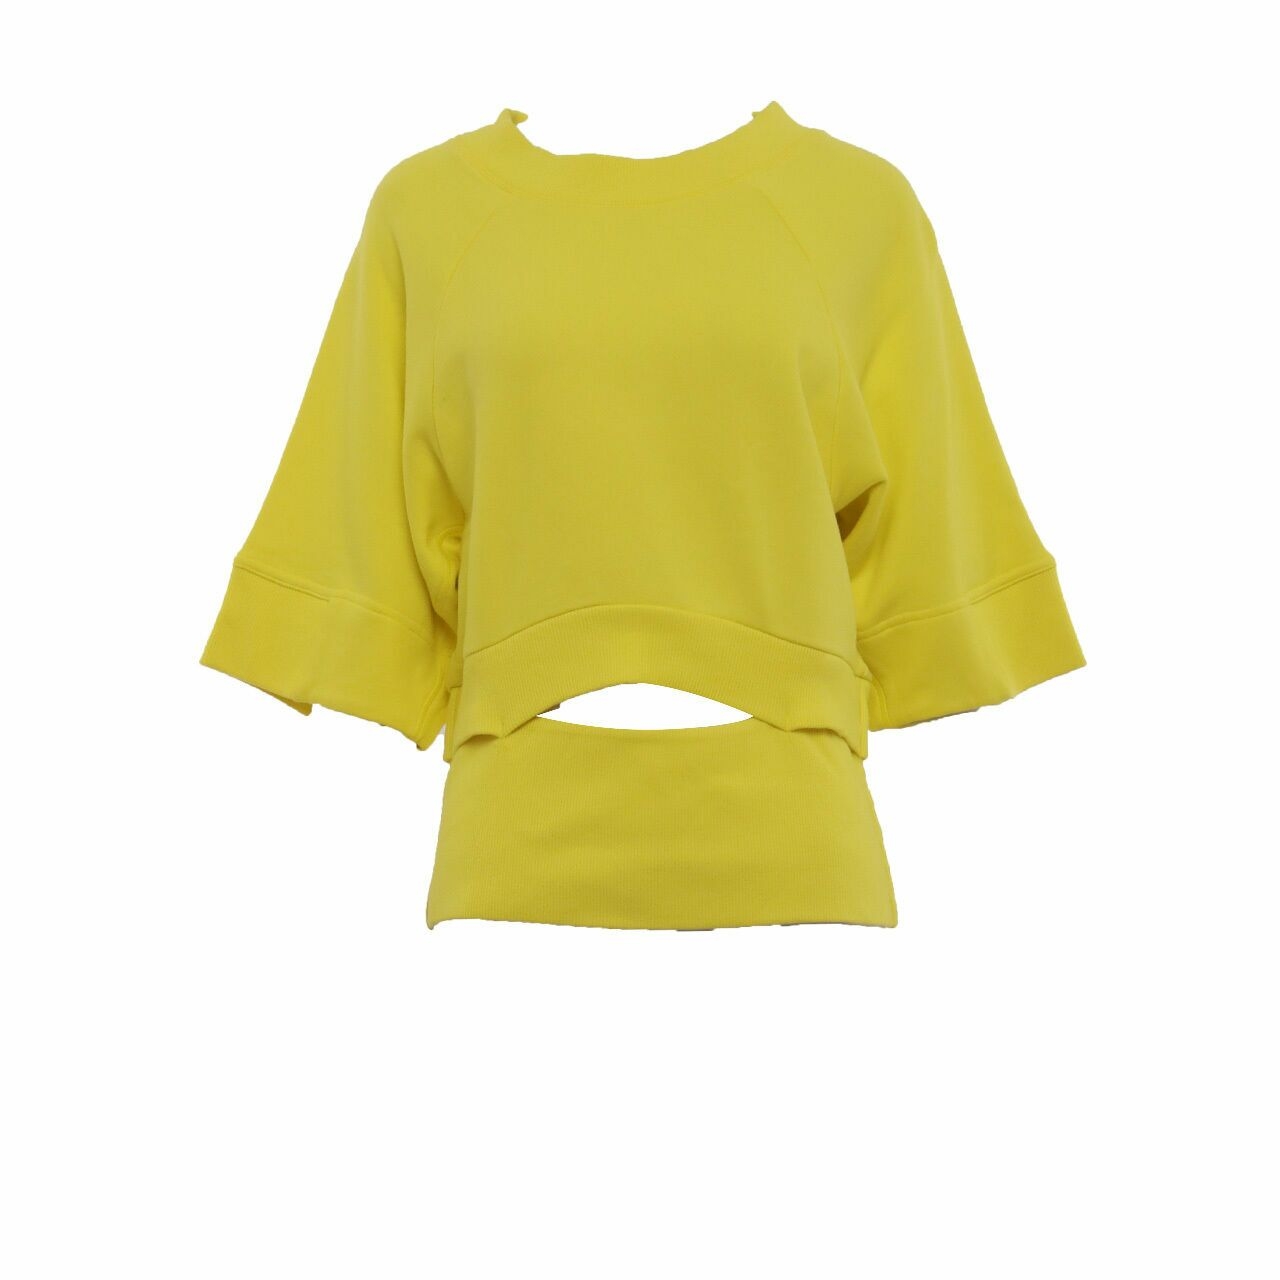 Adidas Stella McCartney Yellow Croppedsweat Shirt